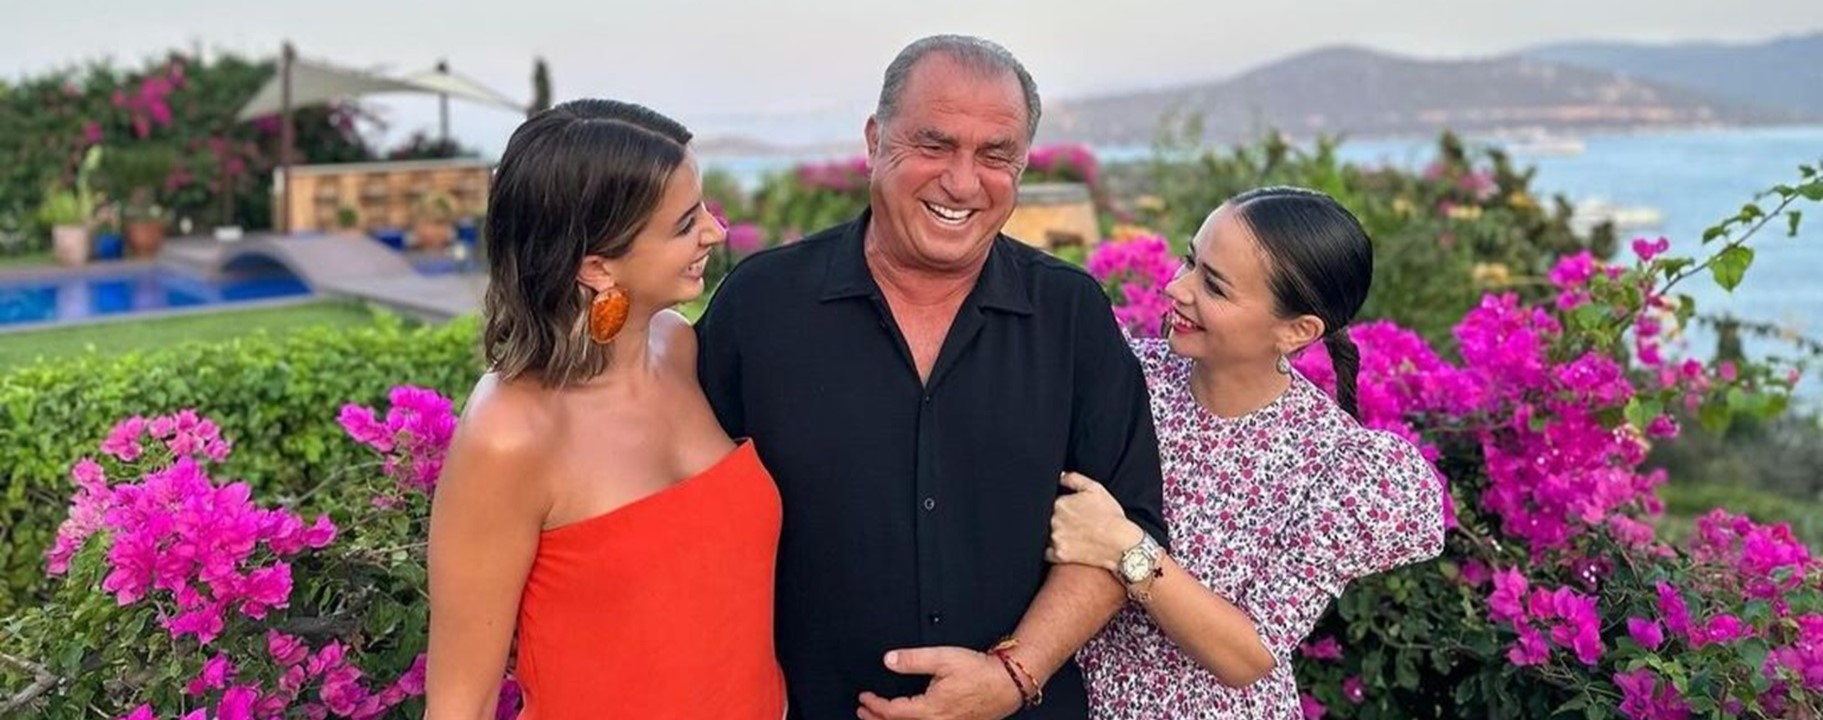 ΑΠΟΚΛΕΙΣΤΙΚΌ: Ο Τερίμ αγόρασε με 500.000 ευρώ σπίτι αξίας 2.000.000 στην Γλυφάδα για την κόρη του/ Ο Ατζούν πάει μεγάλη τουρκική εταιρία ως μέγα χορηγό στο τριφύλλι